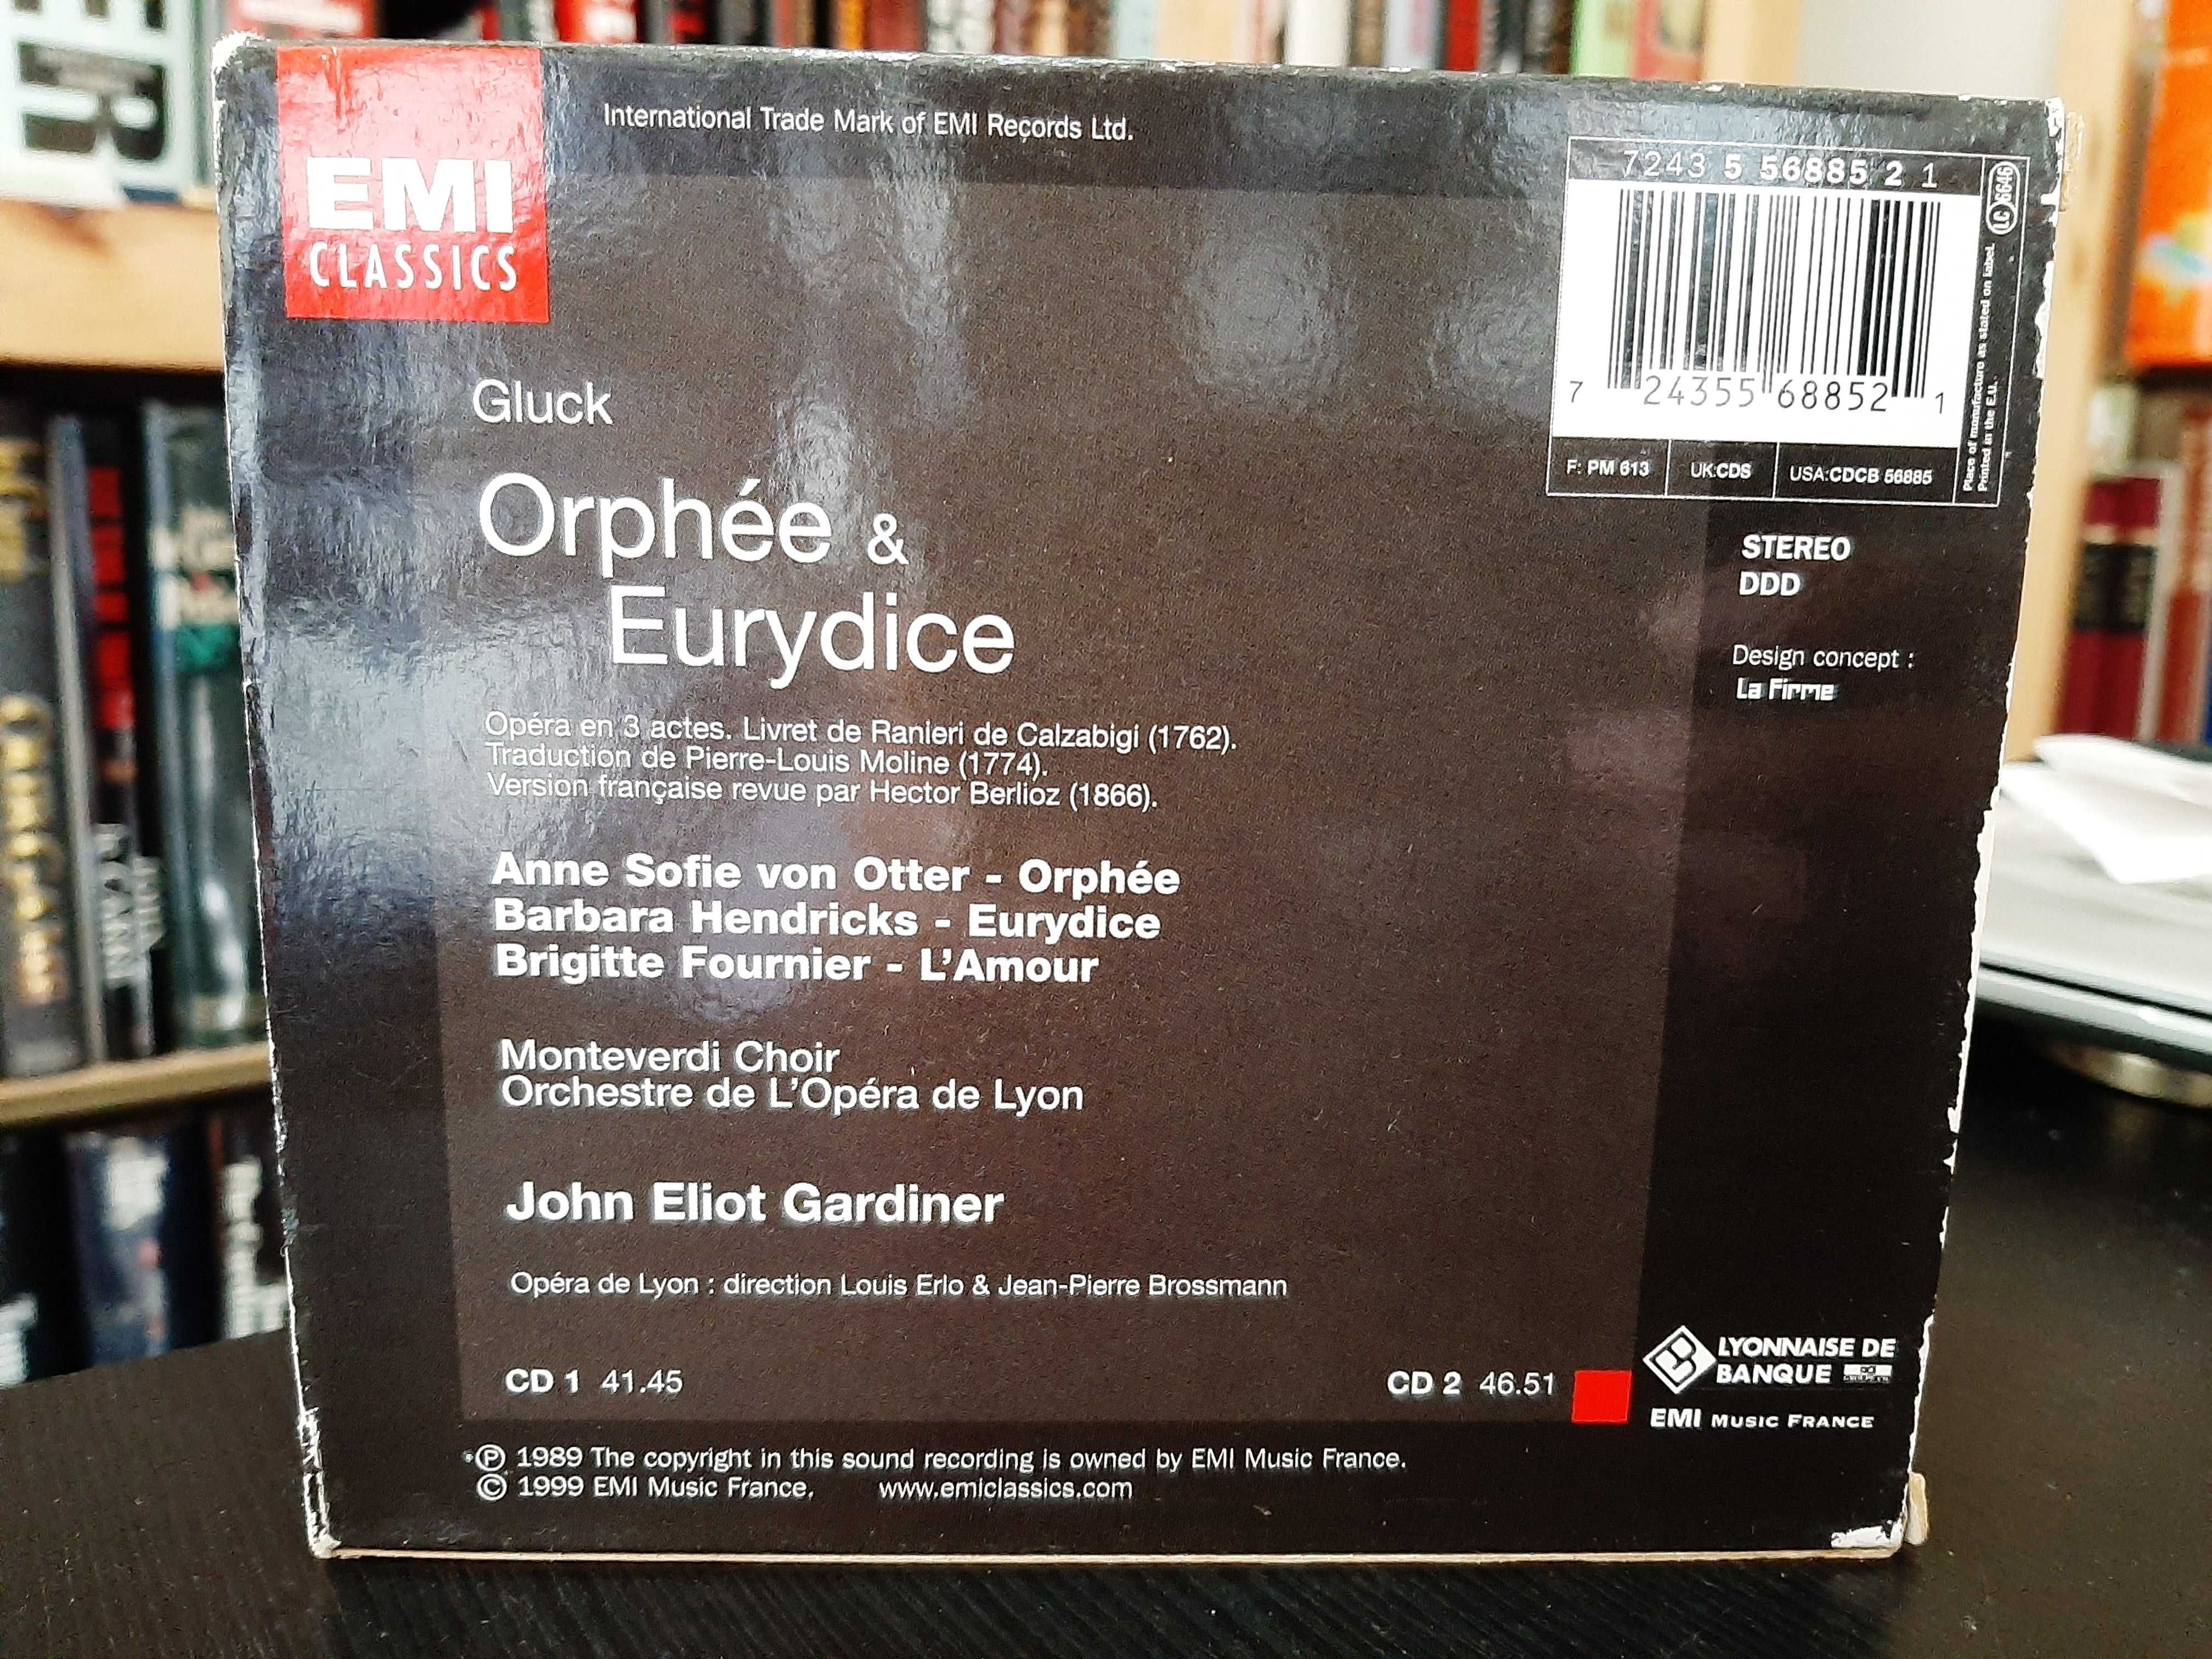 Gluck – Orphée & Eurydice – Von Otter, Barbara Hendricks – JE Gardiner